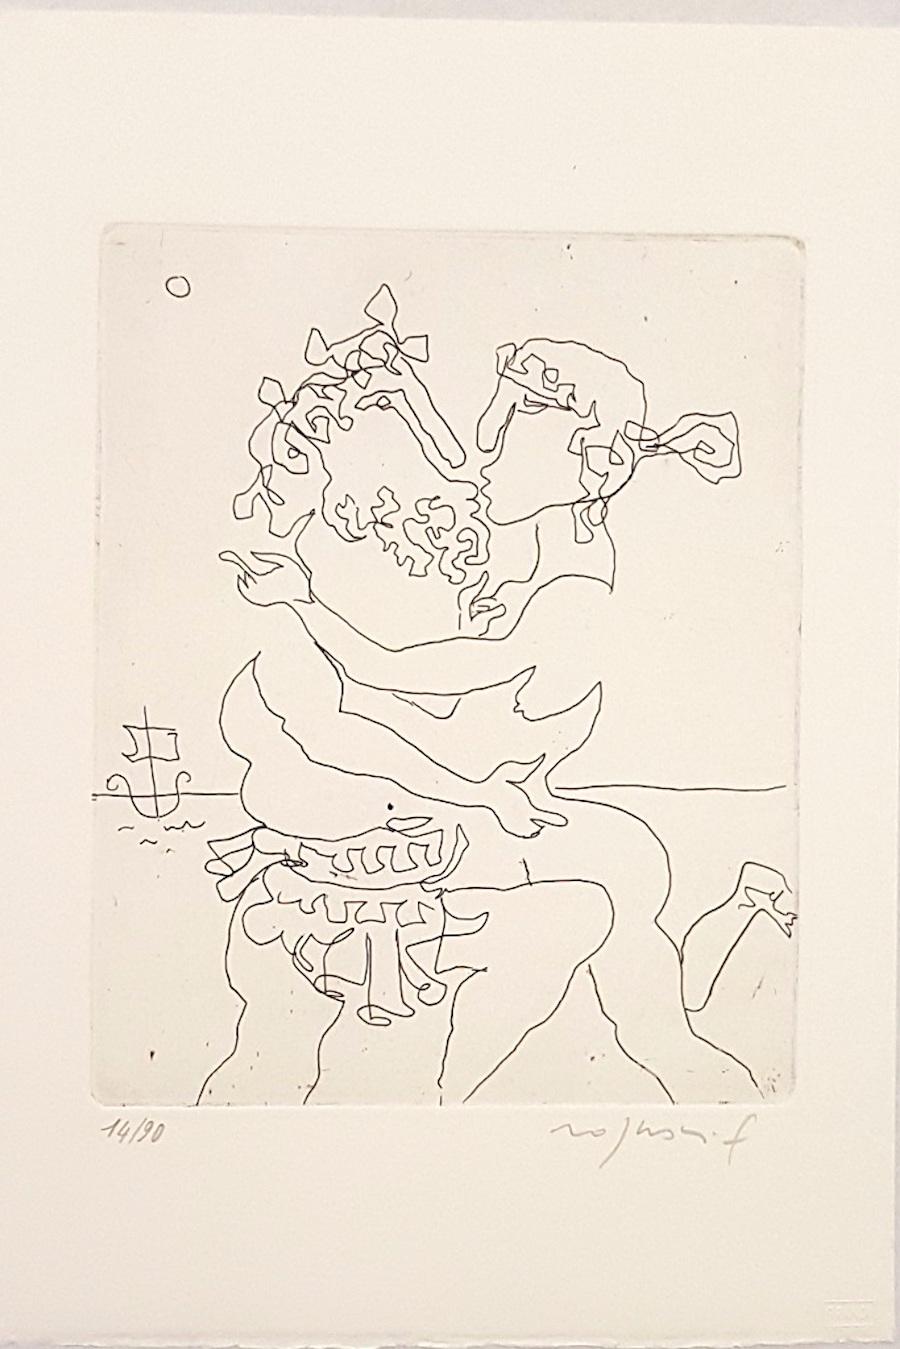 Franco Rognoni Figurative Print - Ulysses and Calipso - Origina Etching by F. Rognoni - 1967